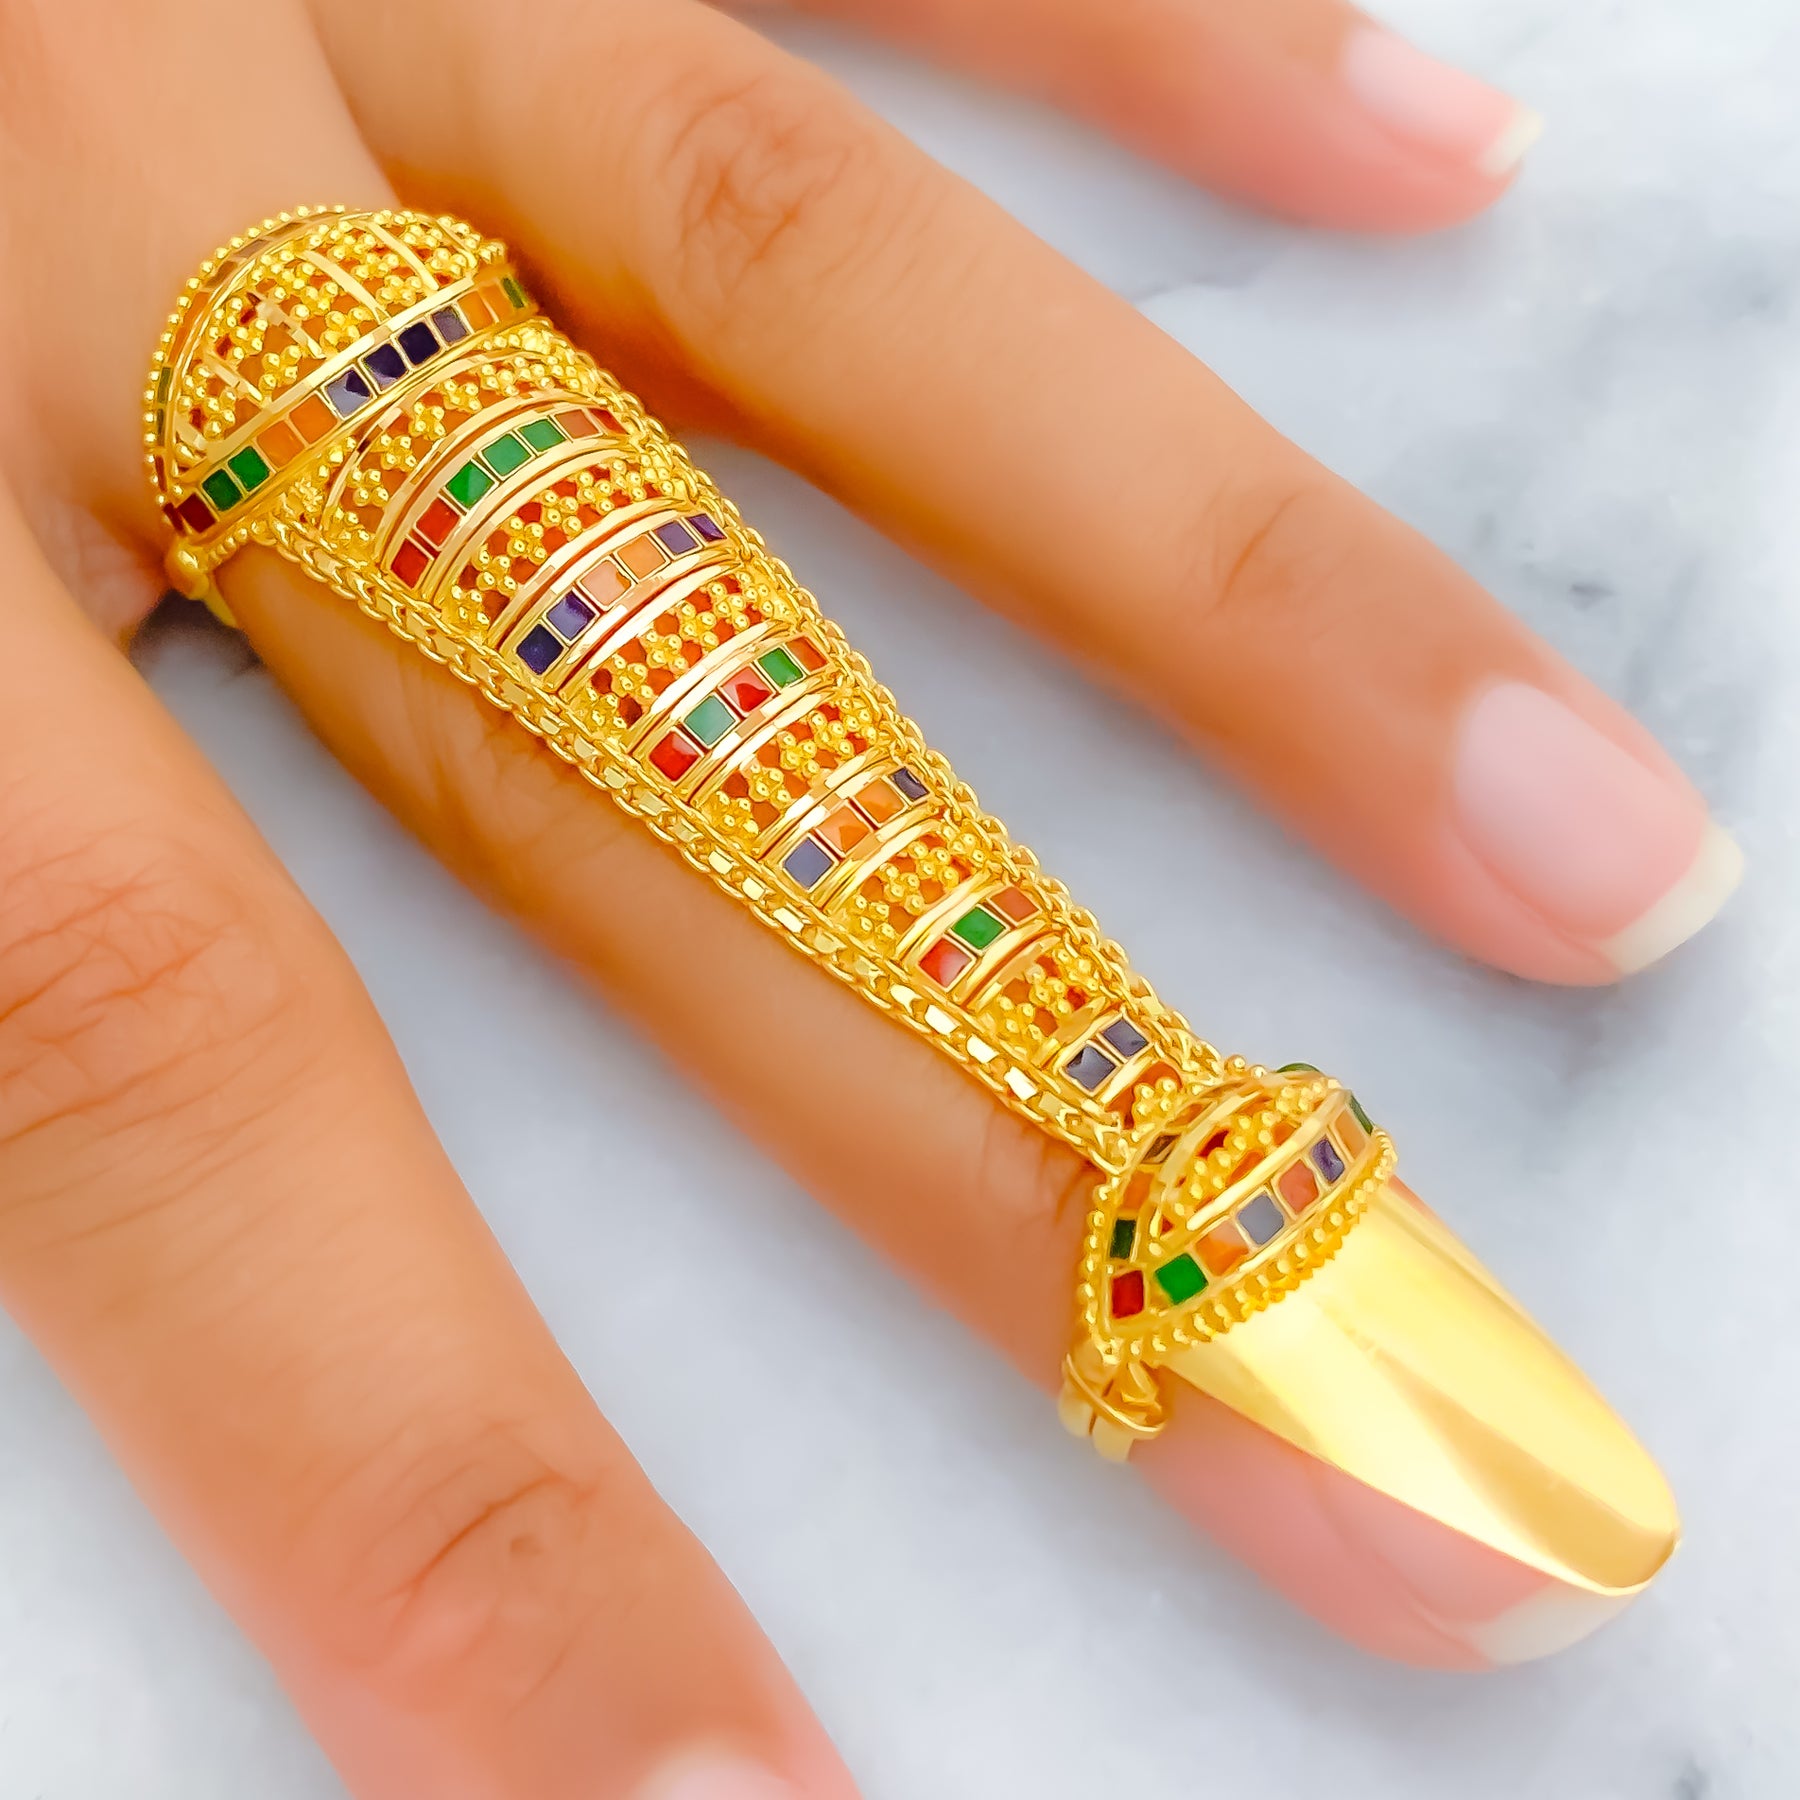 stunning designs of full finger 22ct gold rings for women - YouTube